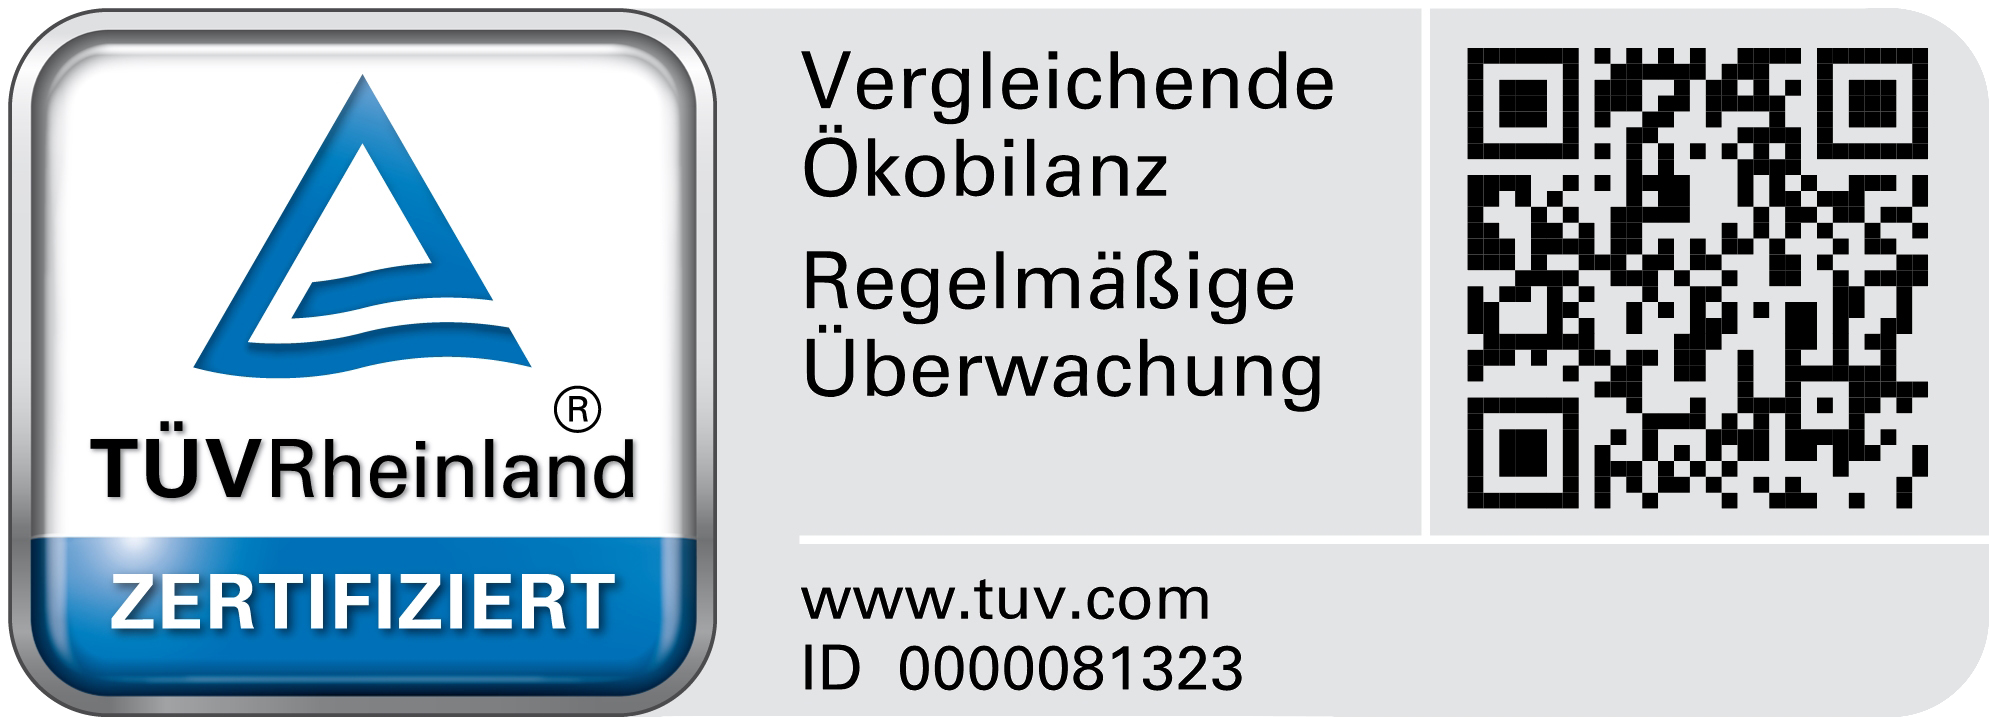 Signet TÜV Rheinland - Vergleichende Ökobilanz